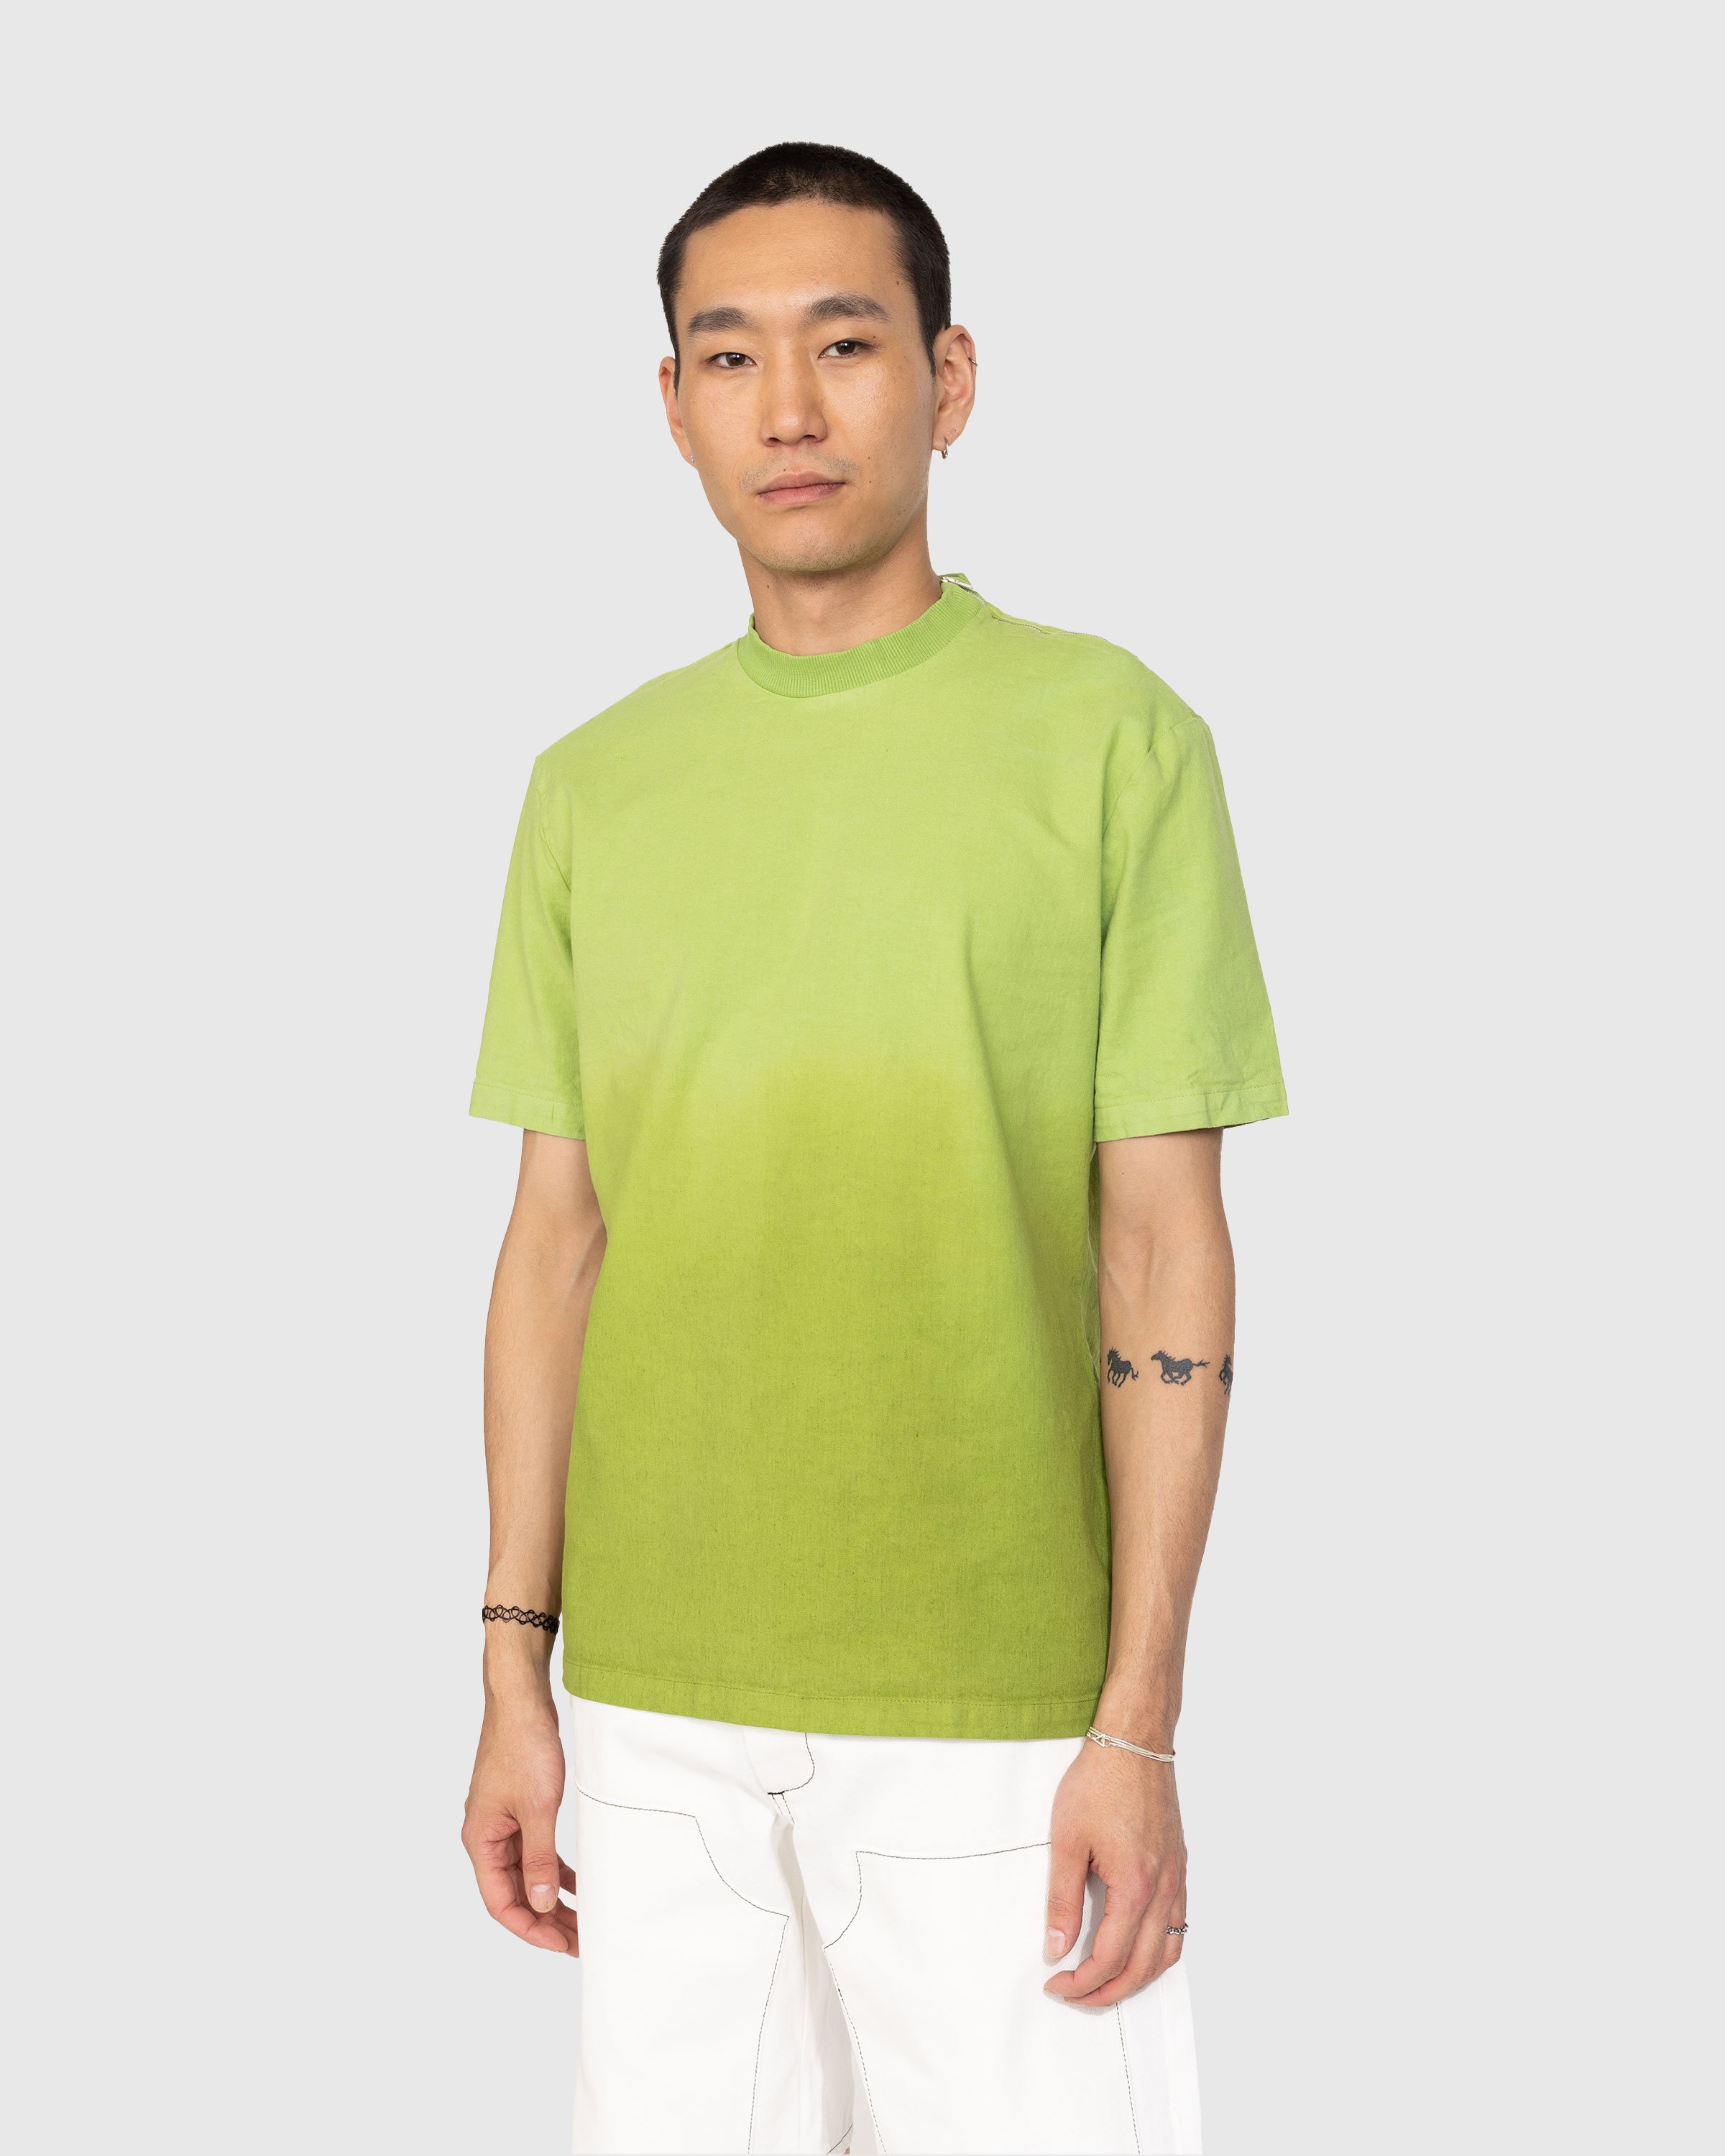 Winnie New York - Degrade Linen T-Shirt Green - Clothing - Green - Image 2